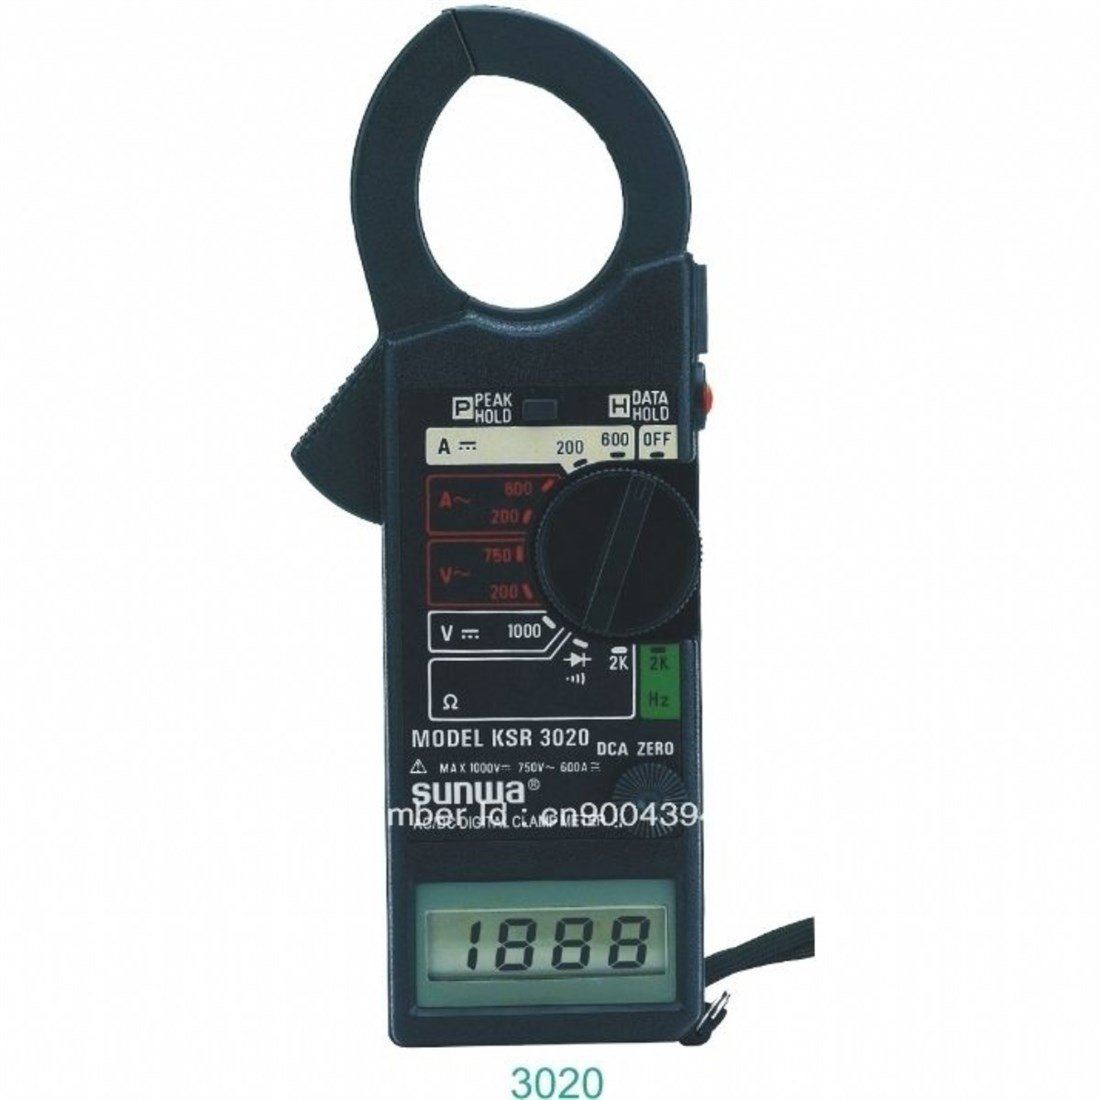 KSR 3020 ac/dc Dijital Pensampermetre Fiyatları | Karaköy Depo